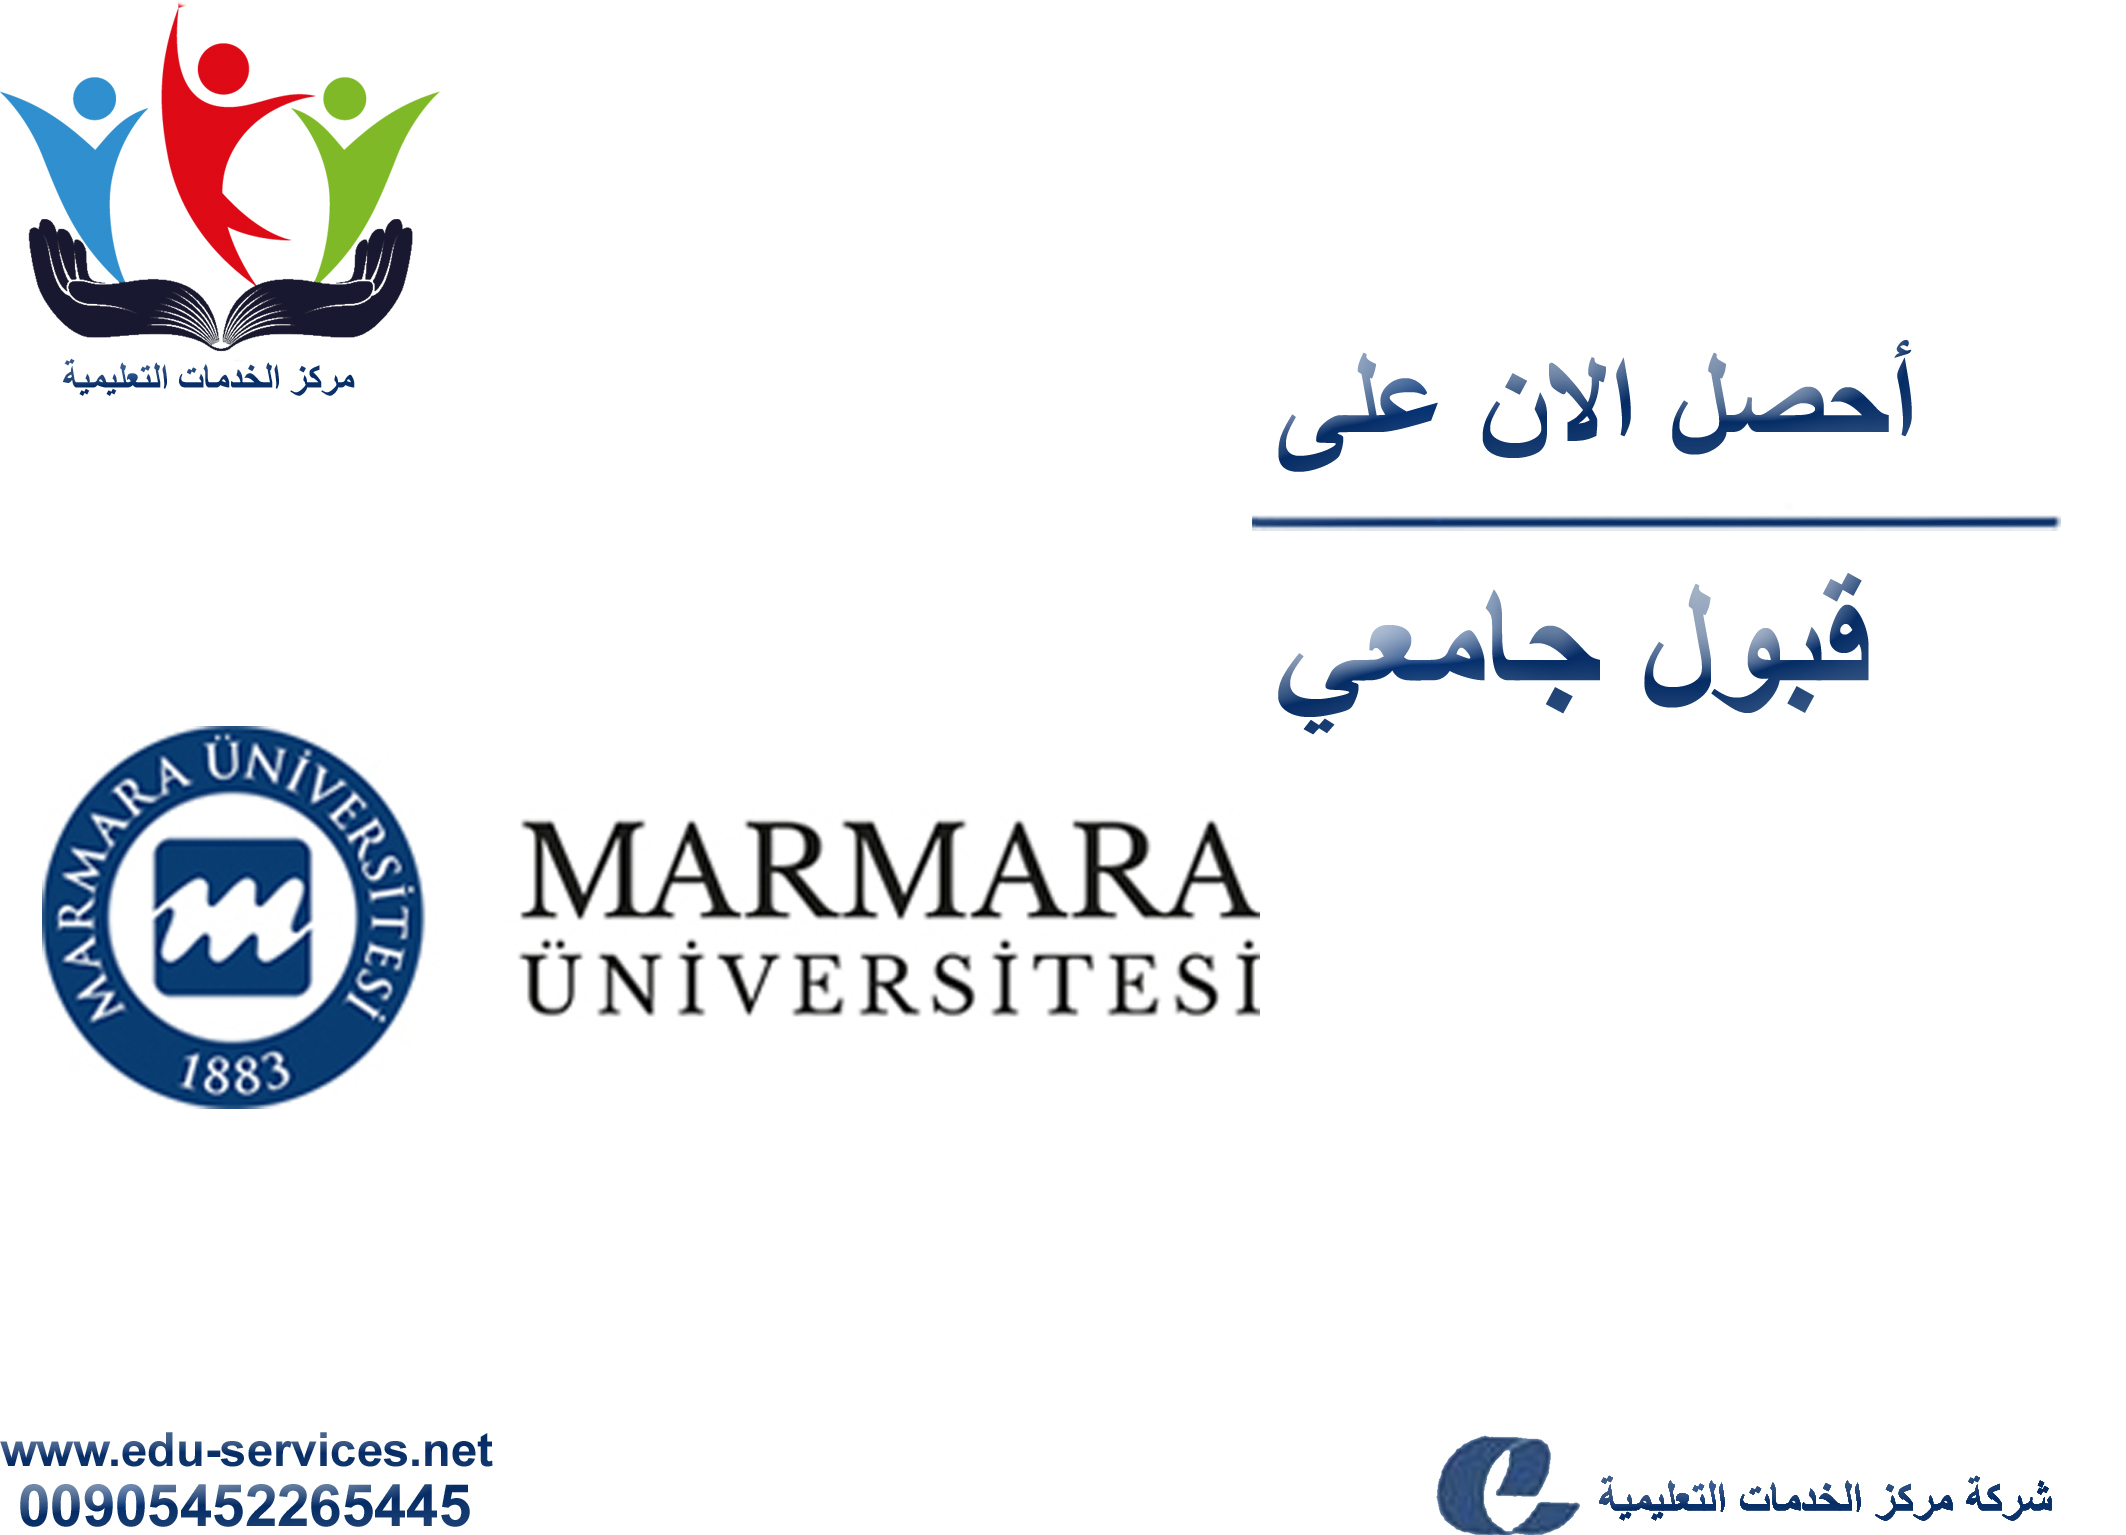 افتتاح التسجيل على جامعة مرمرة للدراسات العليا للعام 2018